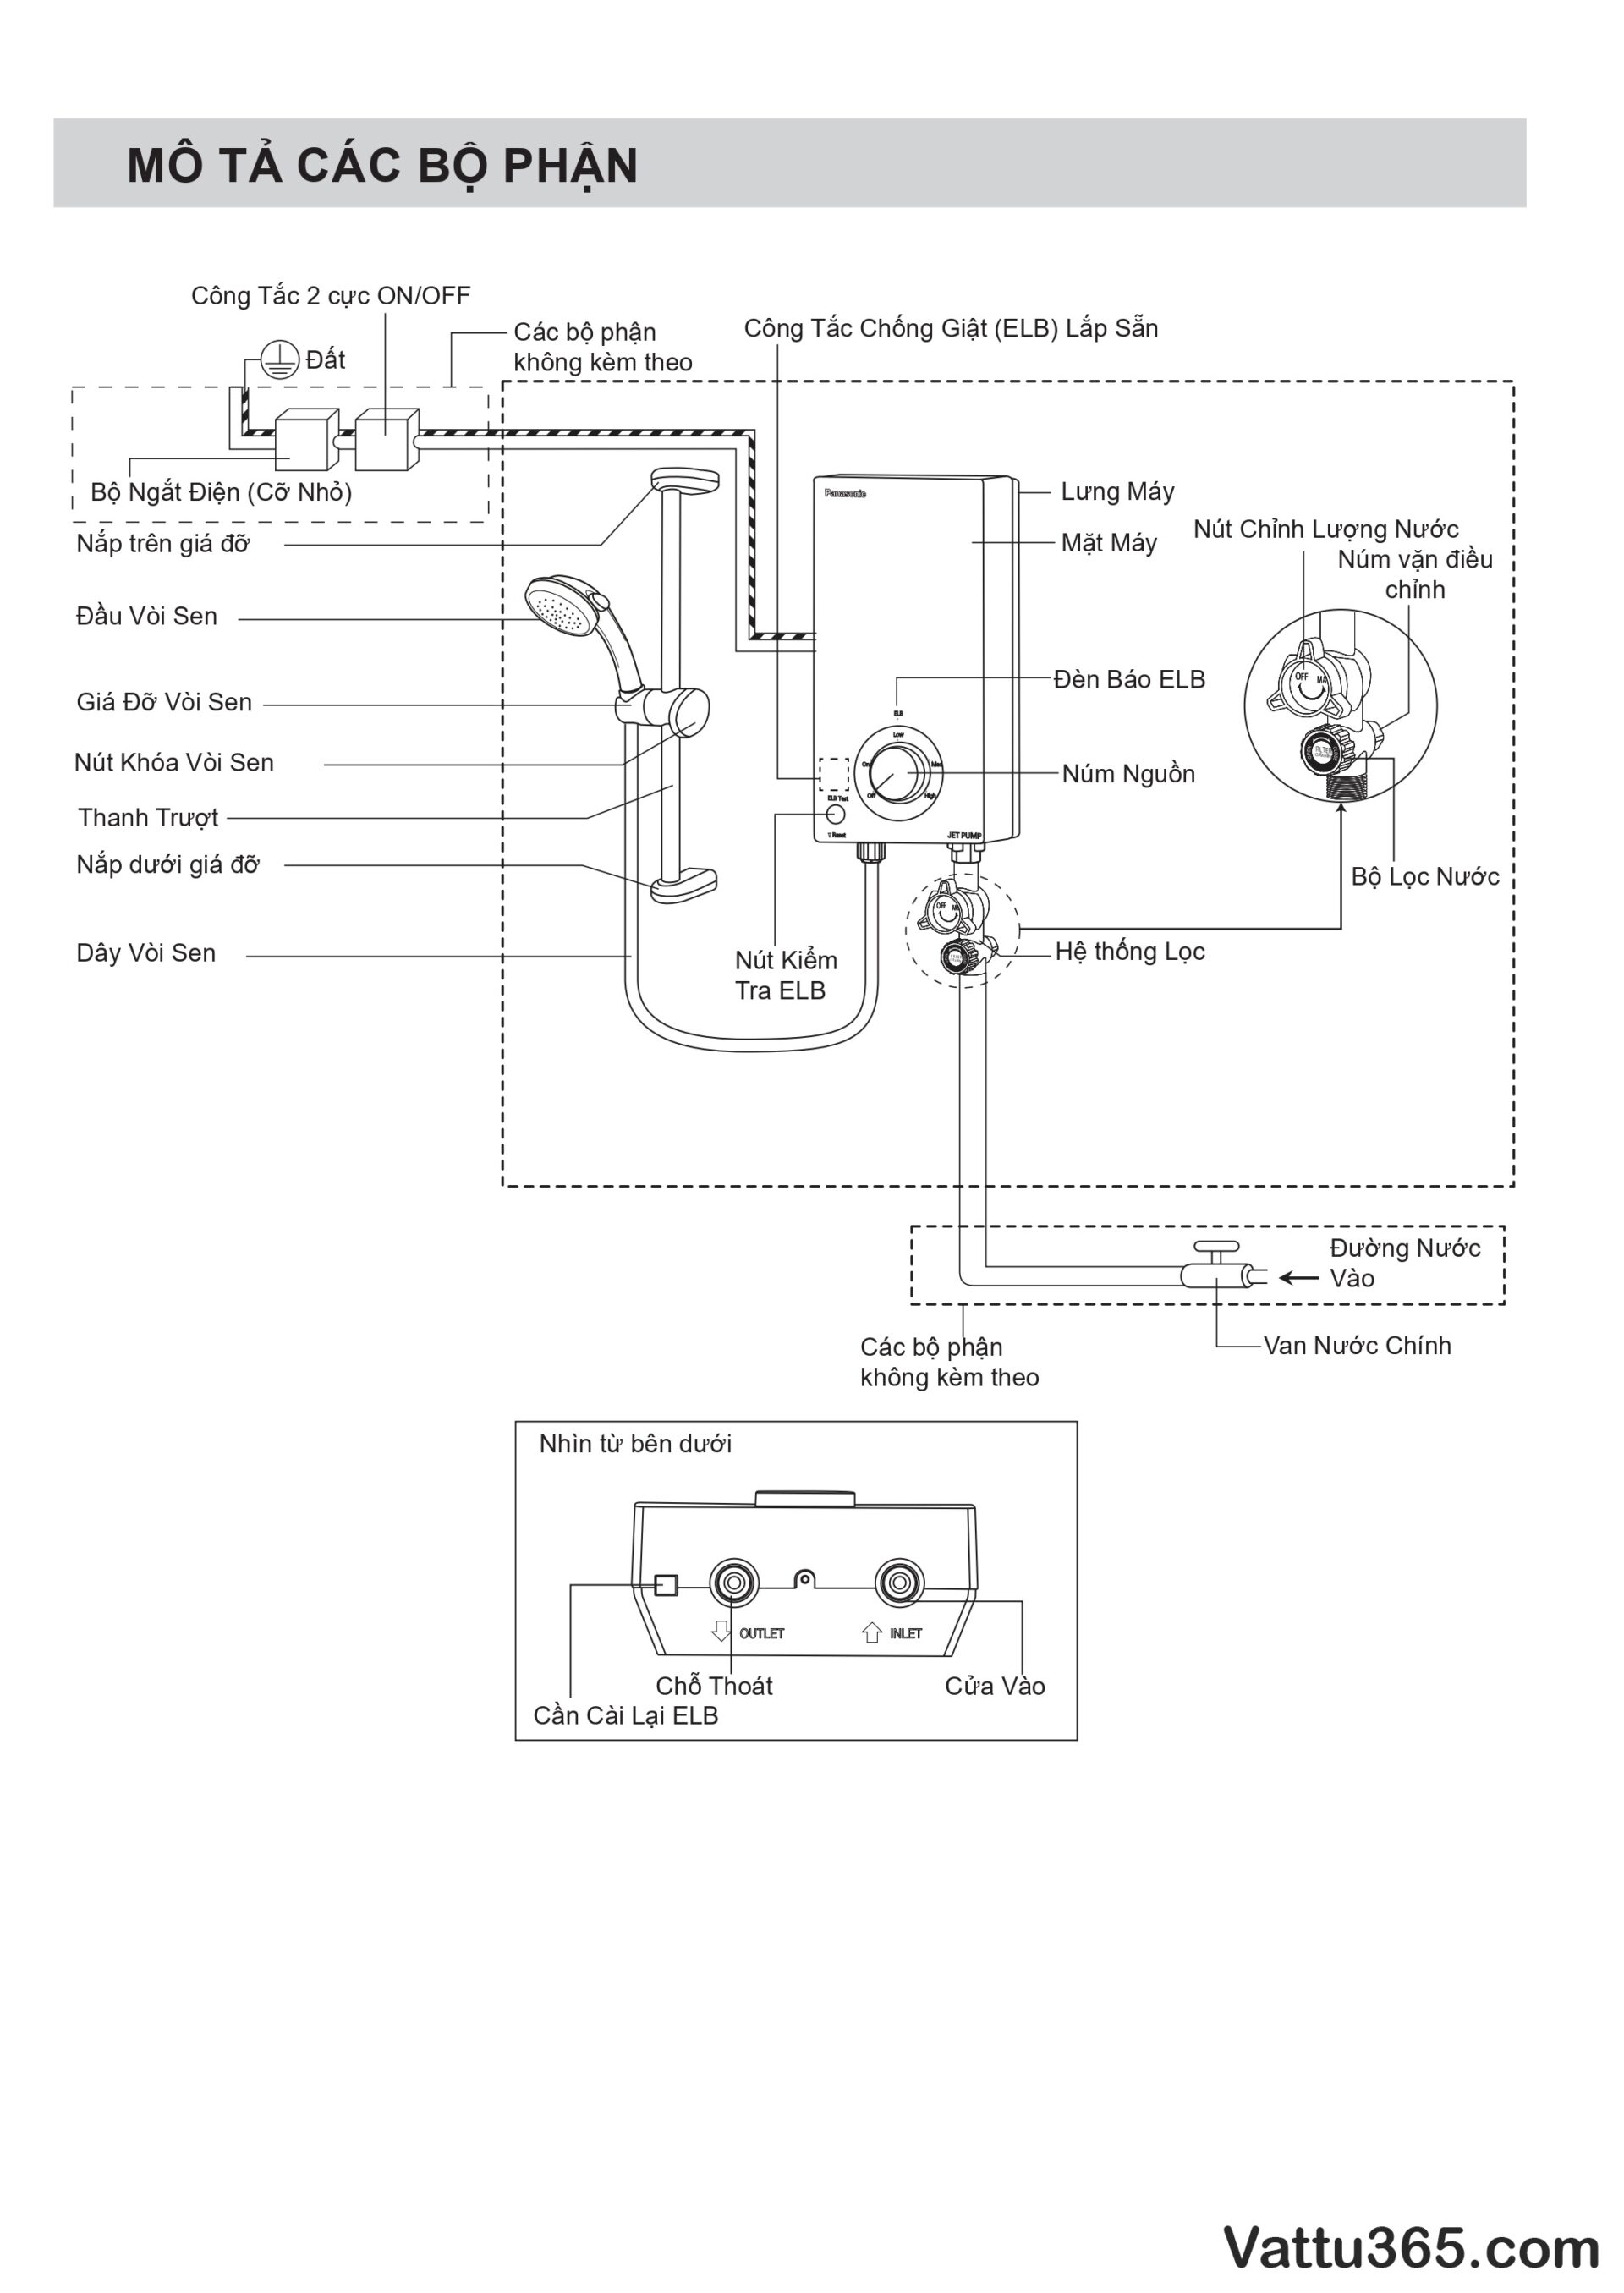 Hướng dẫn sử dụng và lắp đặt máy nước nóng Panasonic V-Series - Trang 6/16